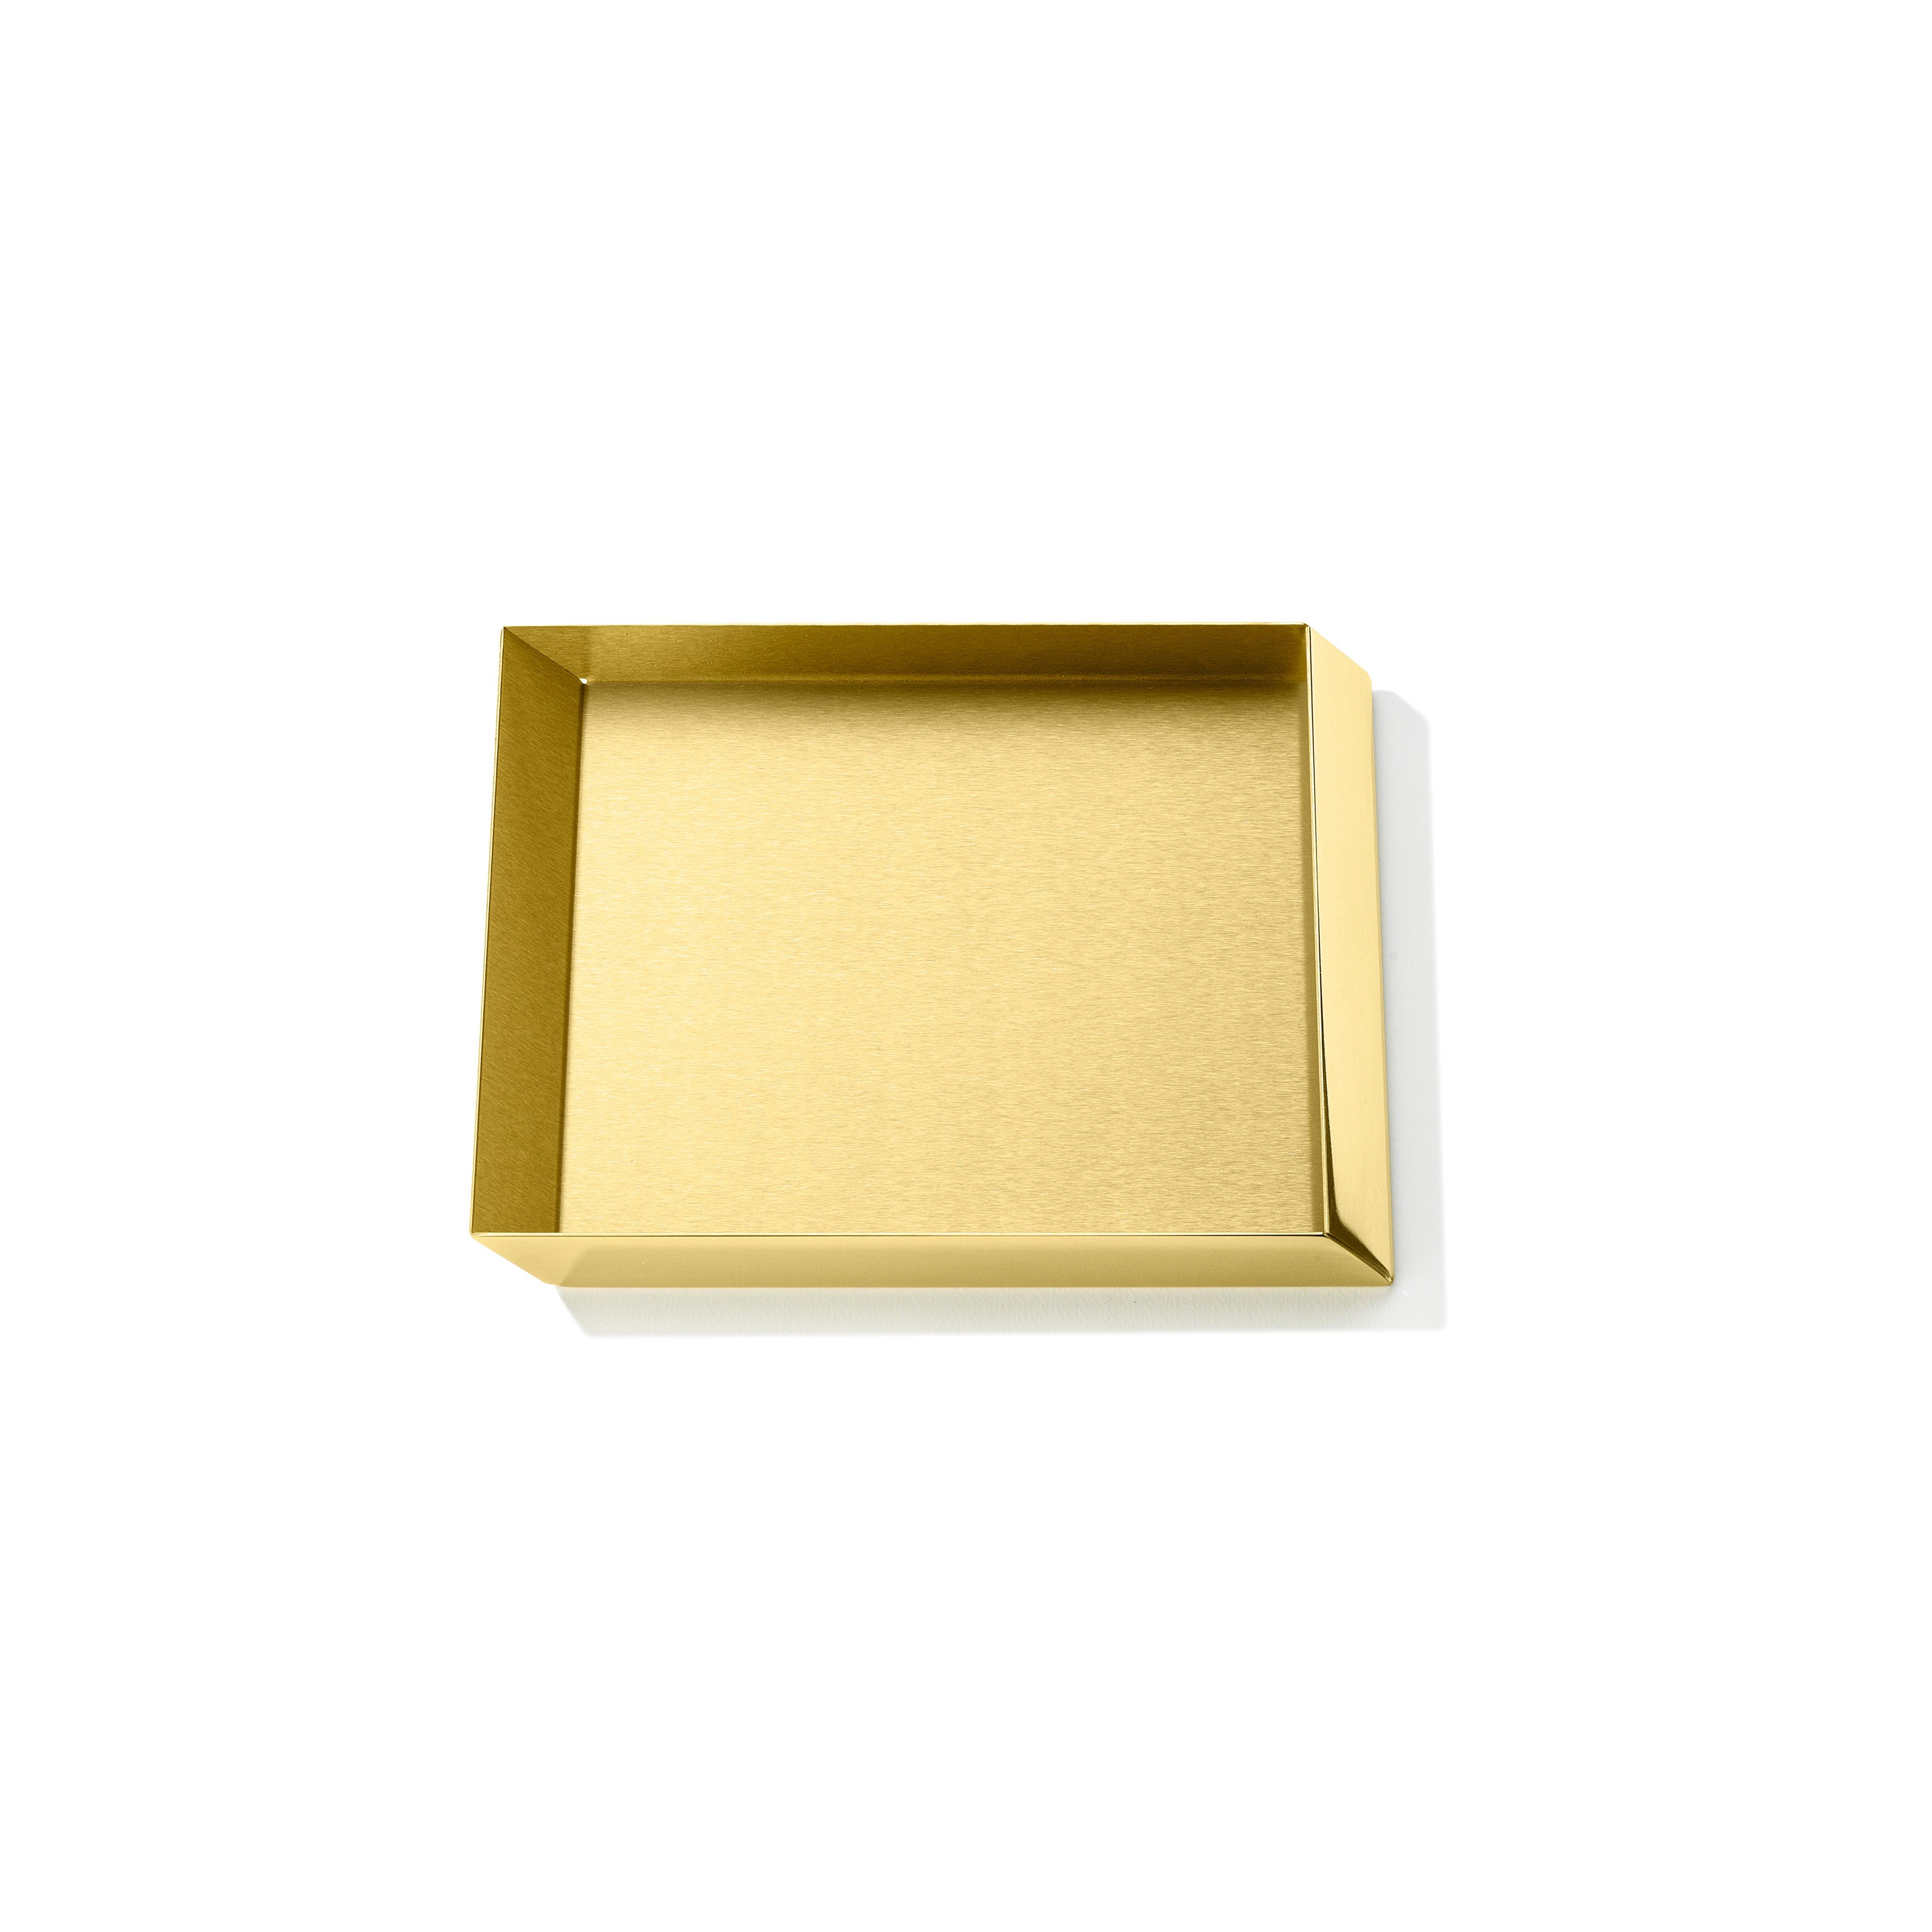 Kleines quadratisches Tablett Axonometry aus Messing von Elisa Giovanni.

Materialien:
Messing
Nettogewicht:
0.55 kg
Abmessungen:
B 20 x T 20 x 2 H cm.